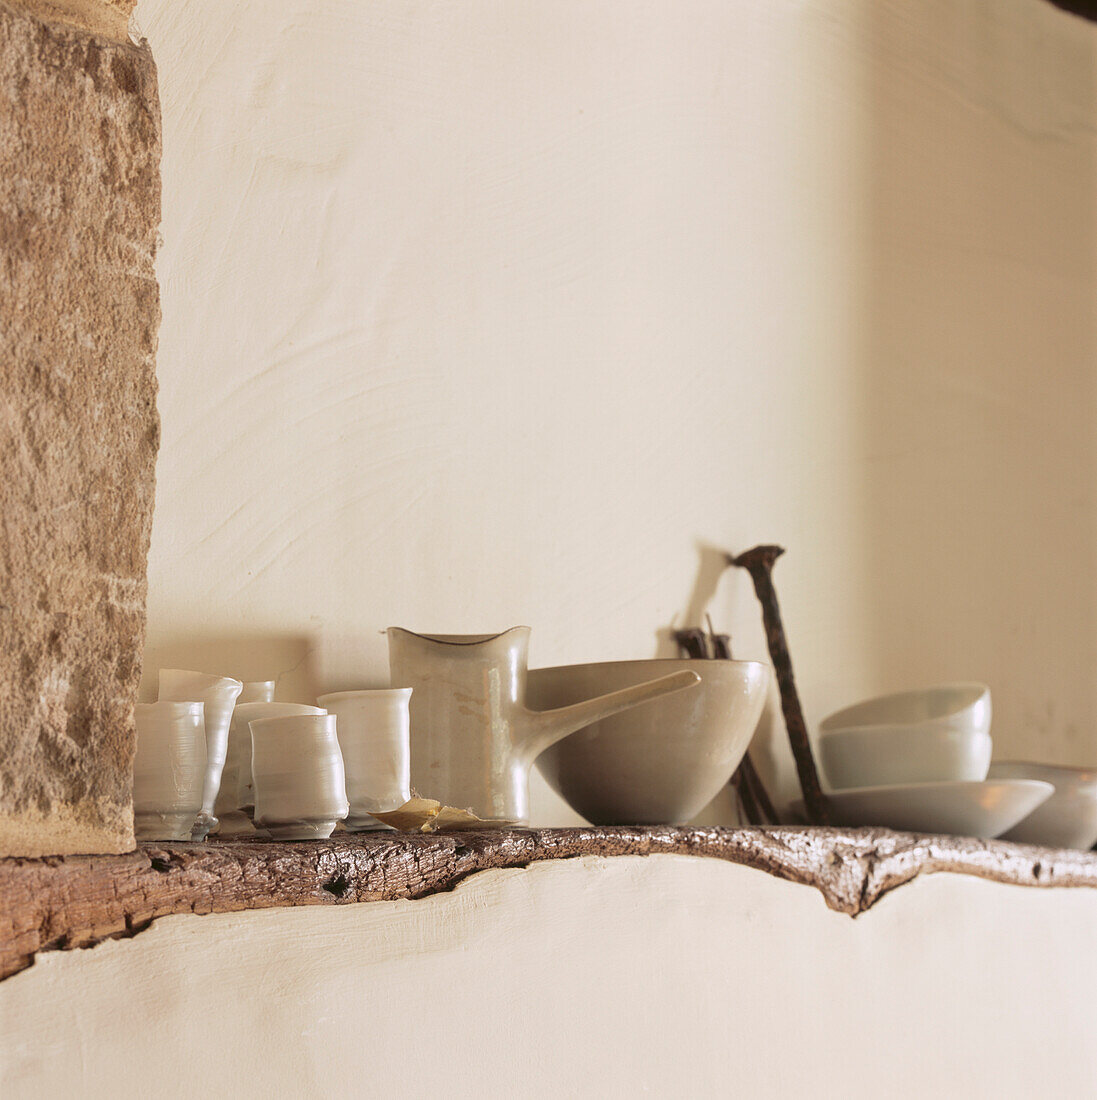 Glasierte Keramiken auf einem Holzbalken in einer verputzten Wand